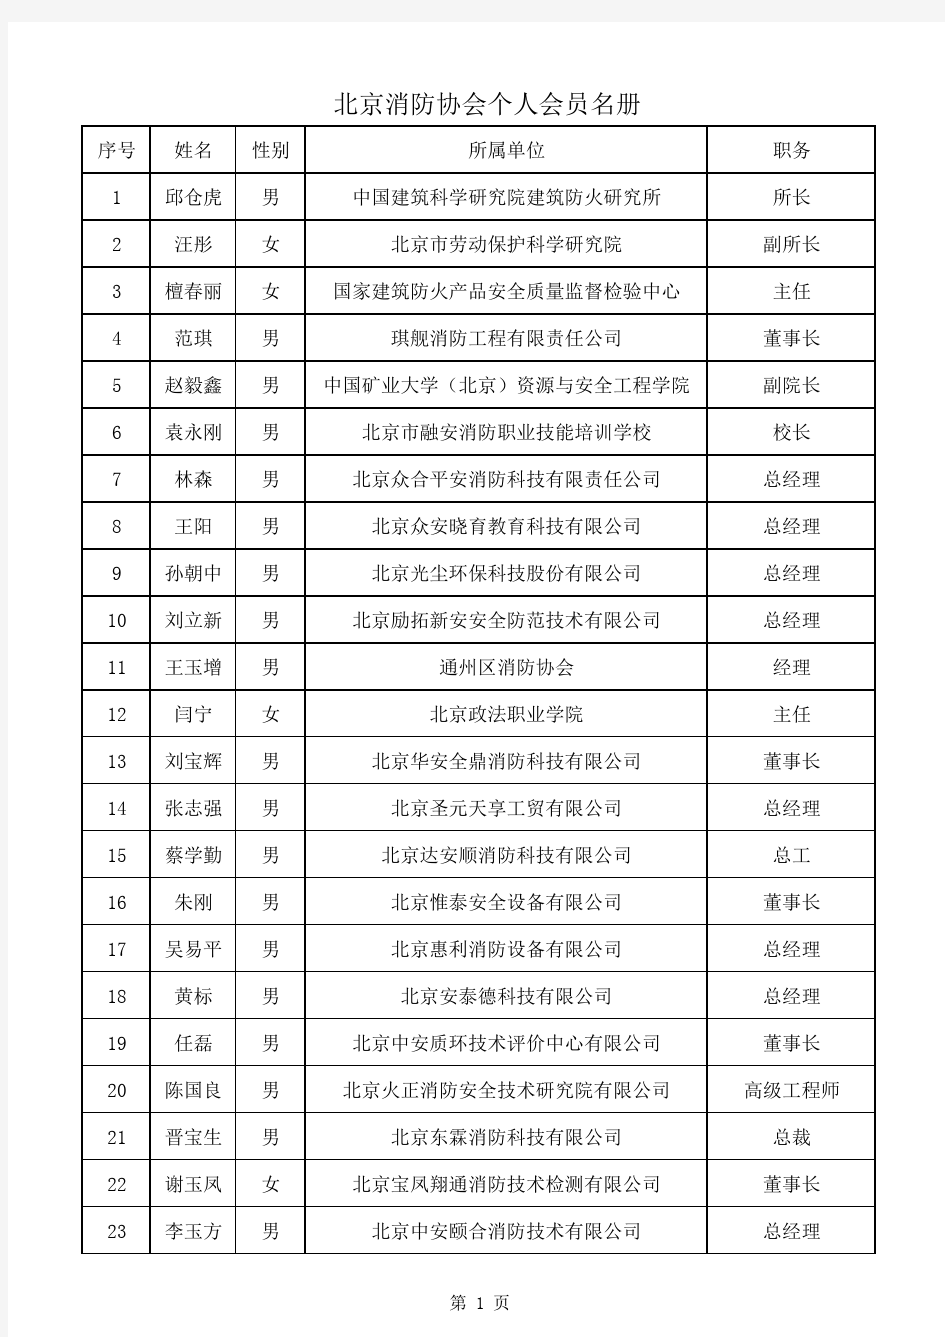 北京消防协会个人会员名册.pdf